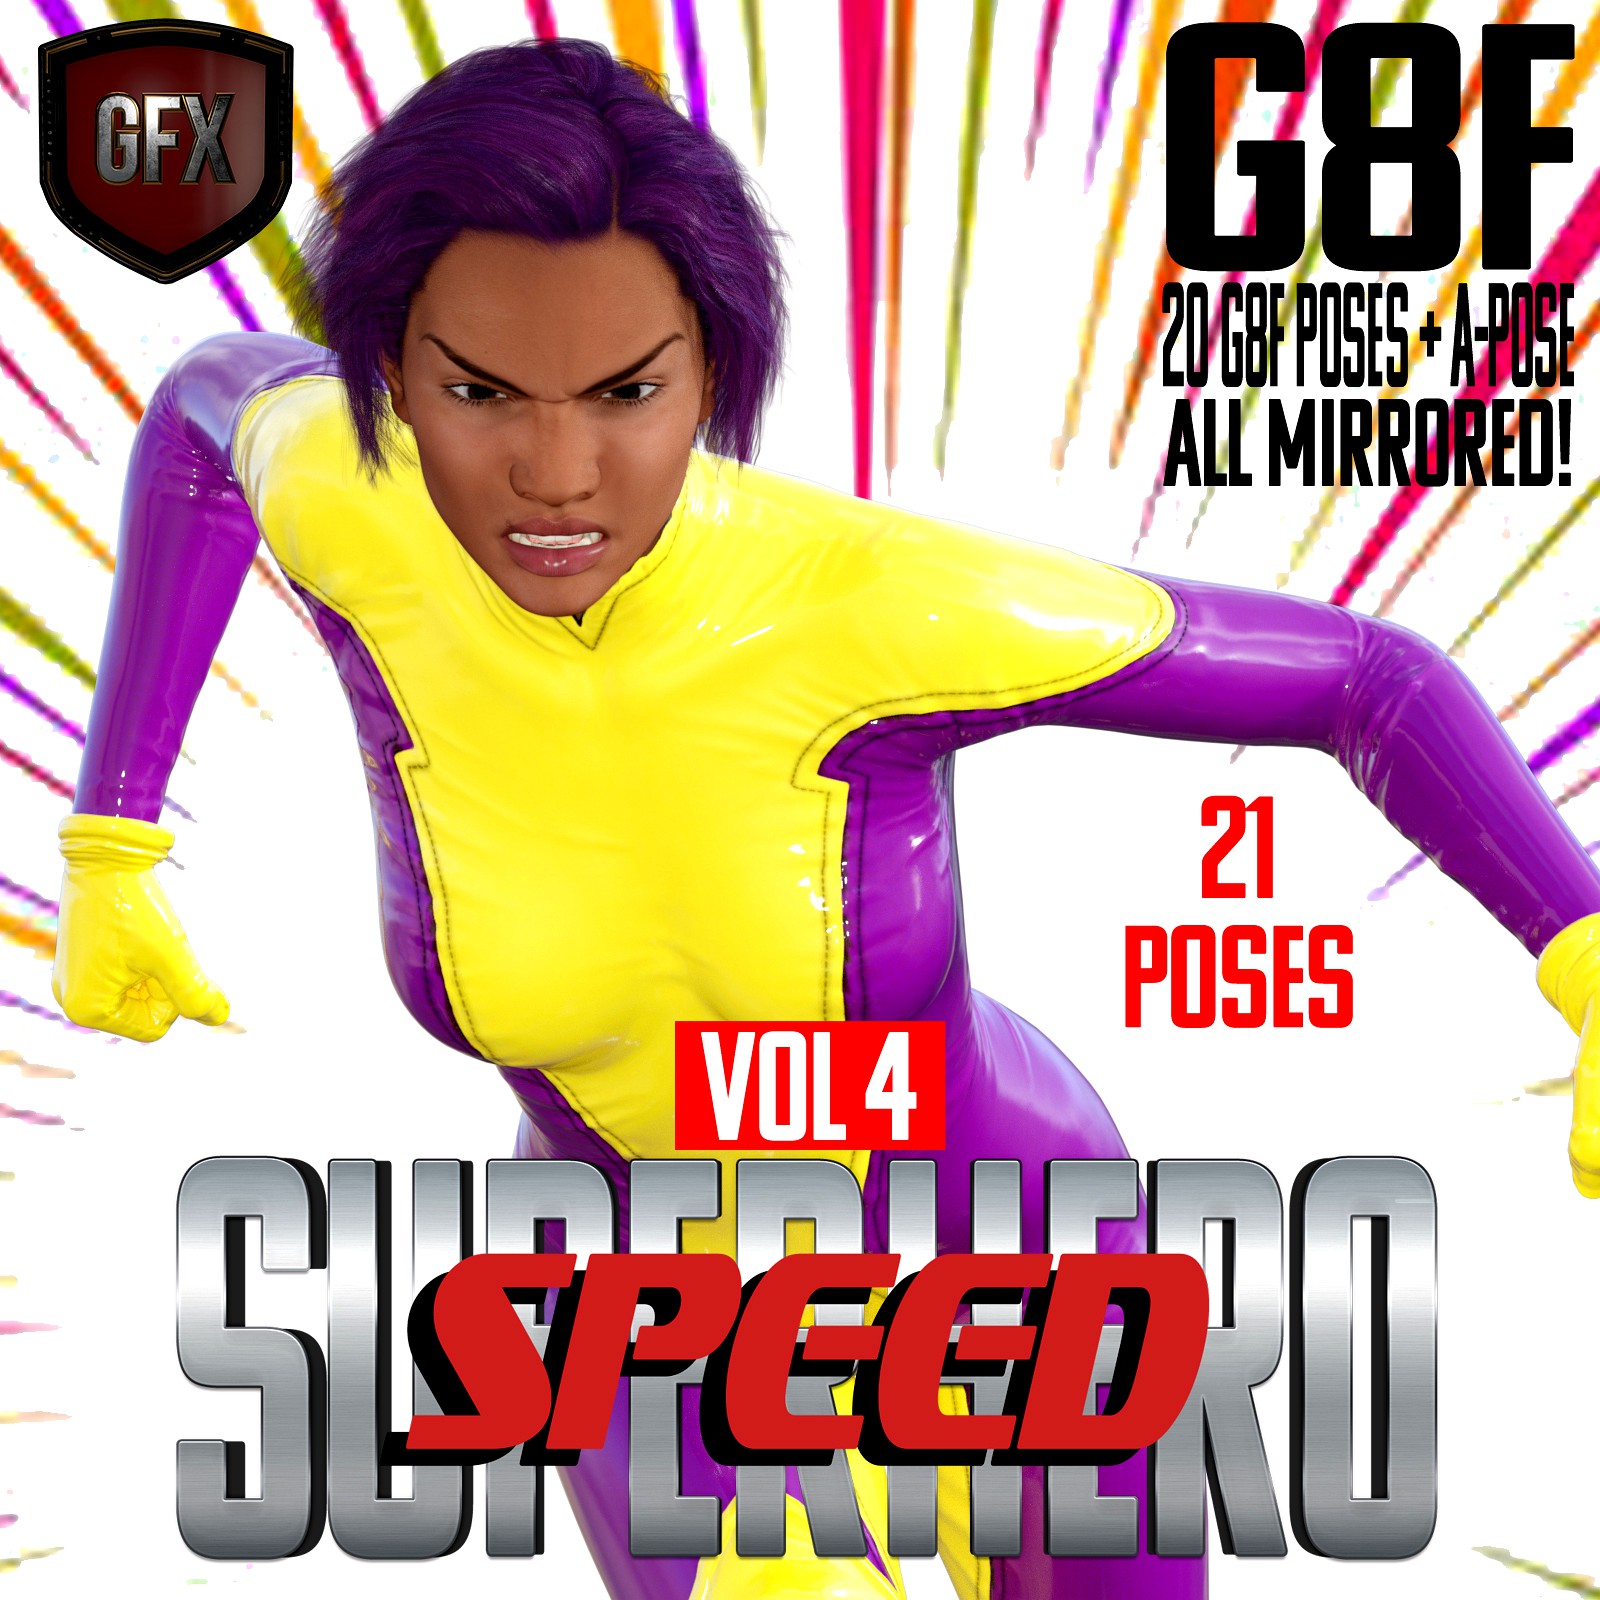 SuperHero Speed for G8F Volume 4